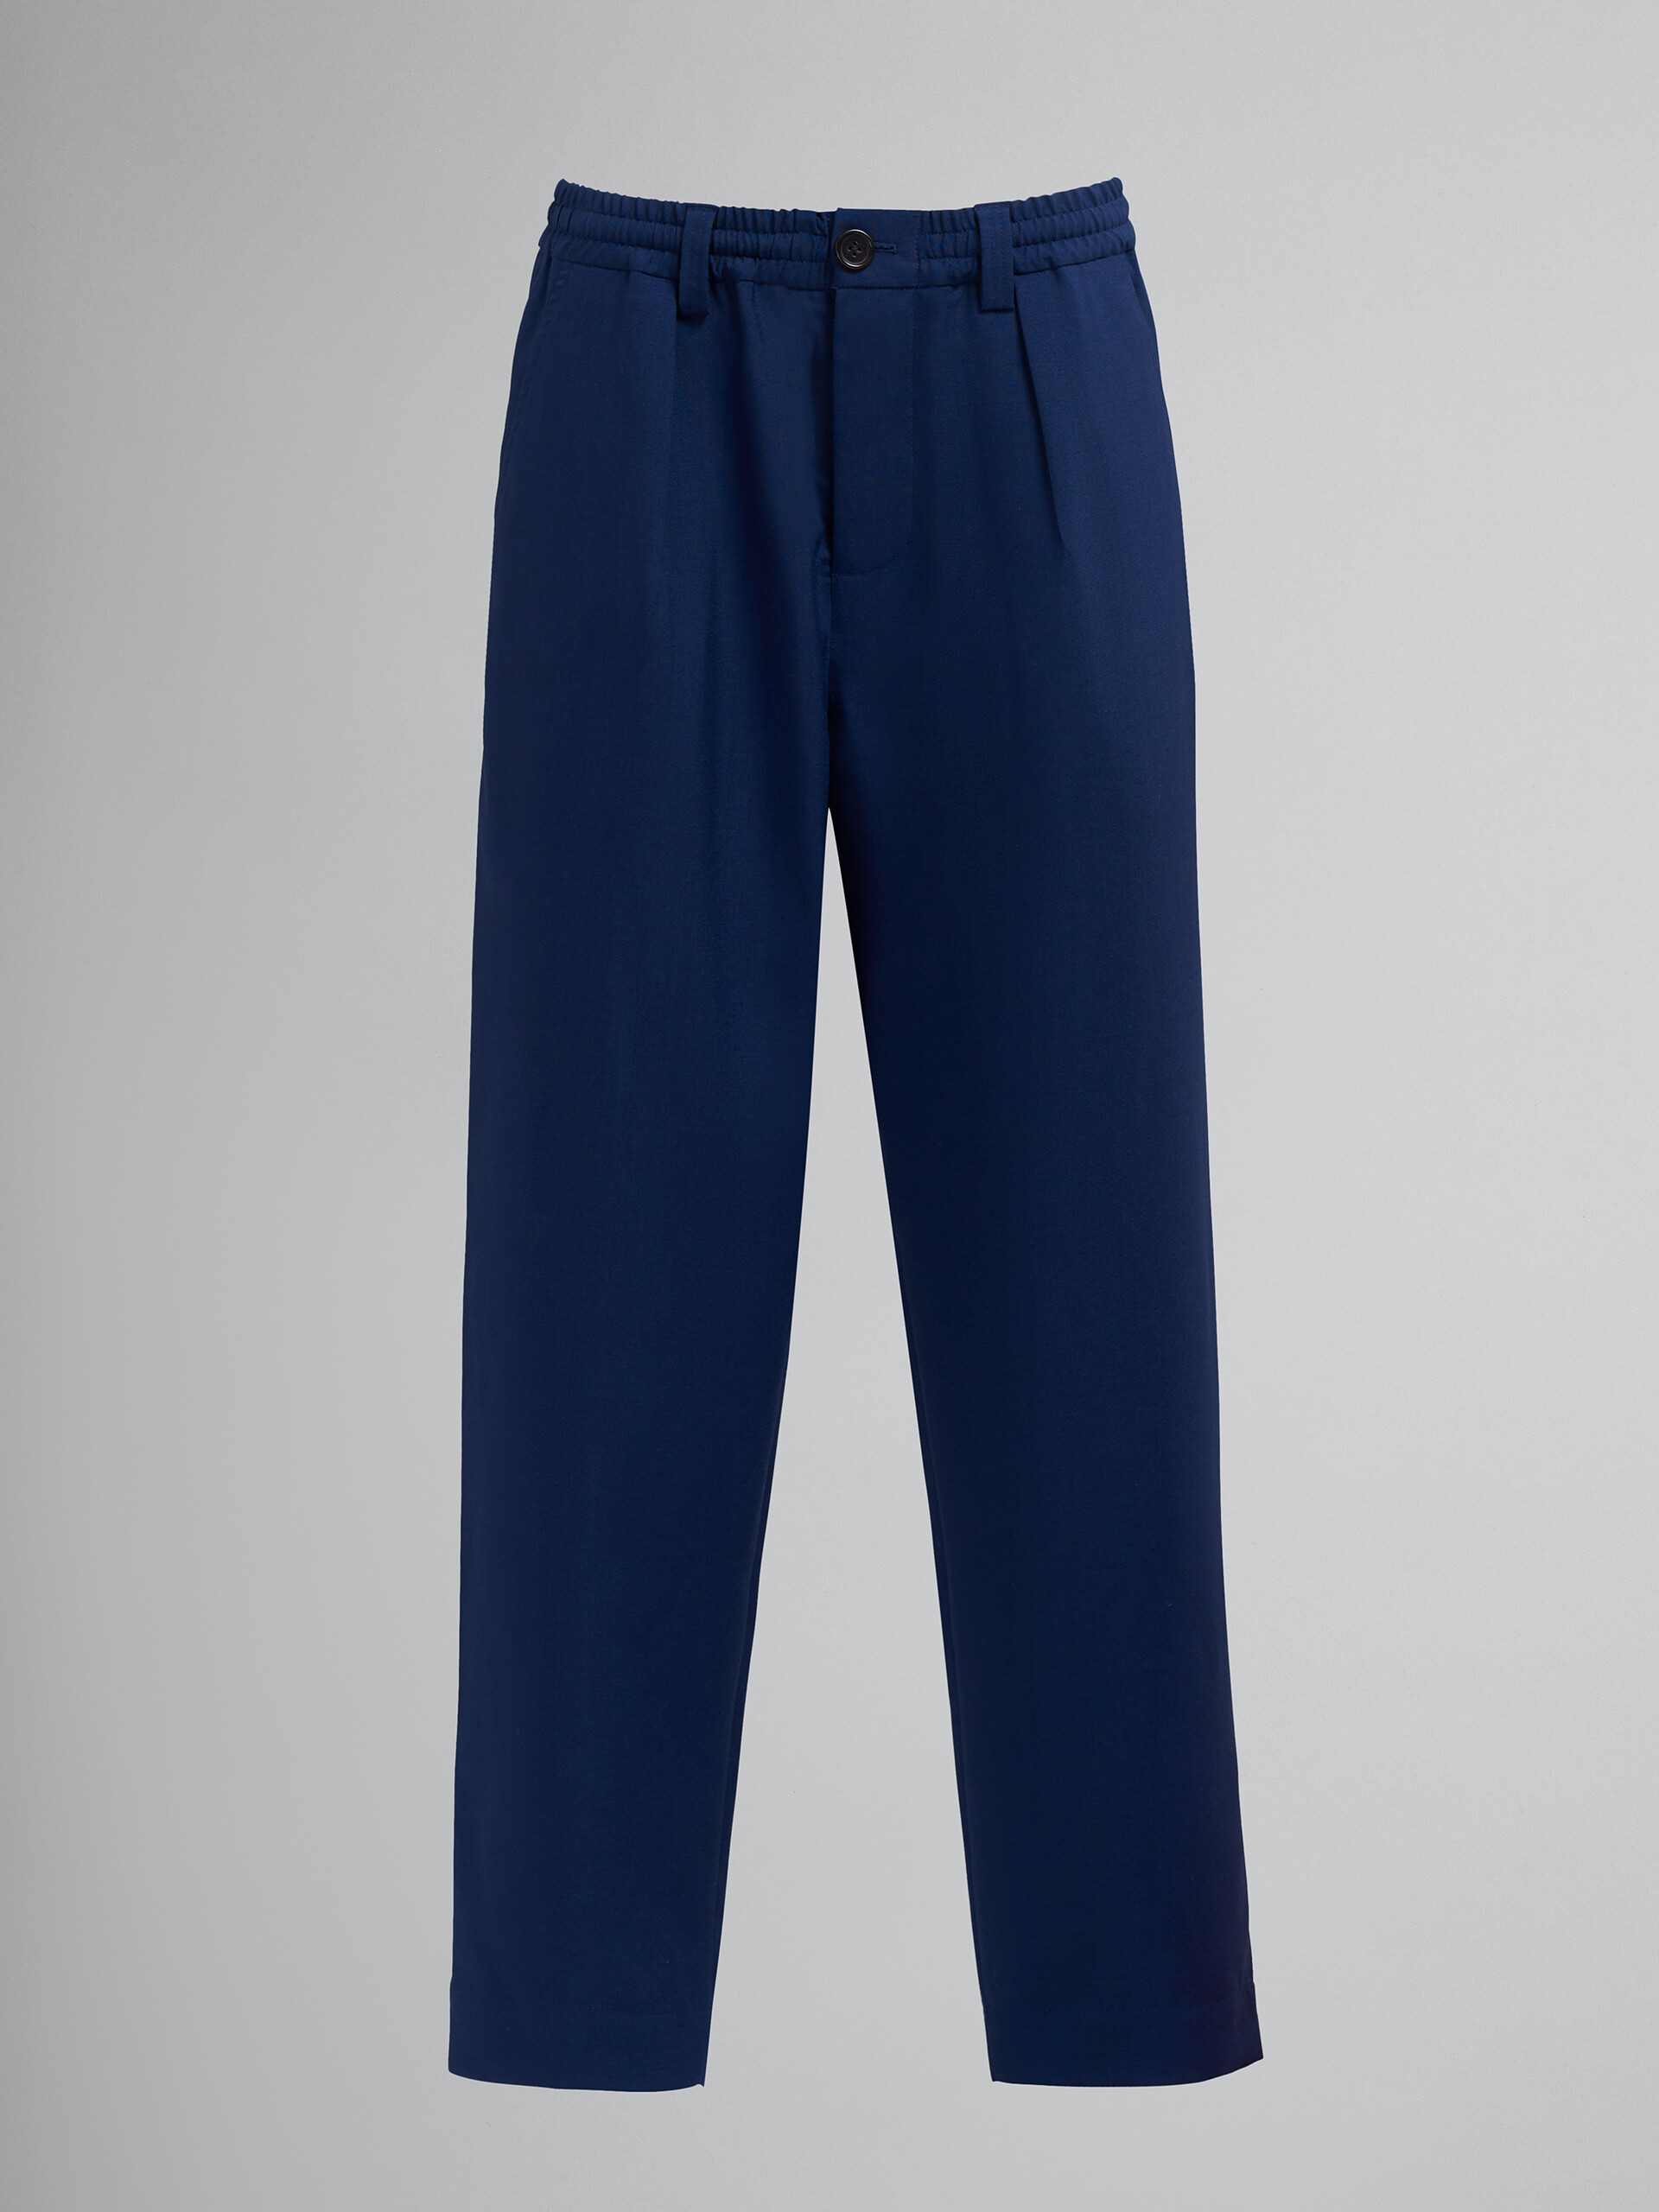 Pantalon raccourci en laine tropicale bleu et noir - Pantalons - Image 1